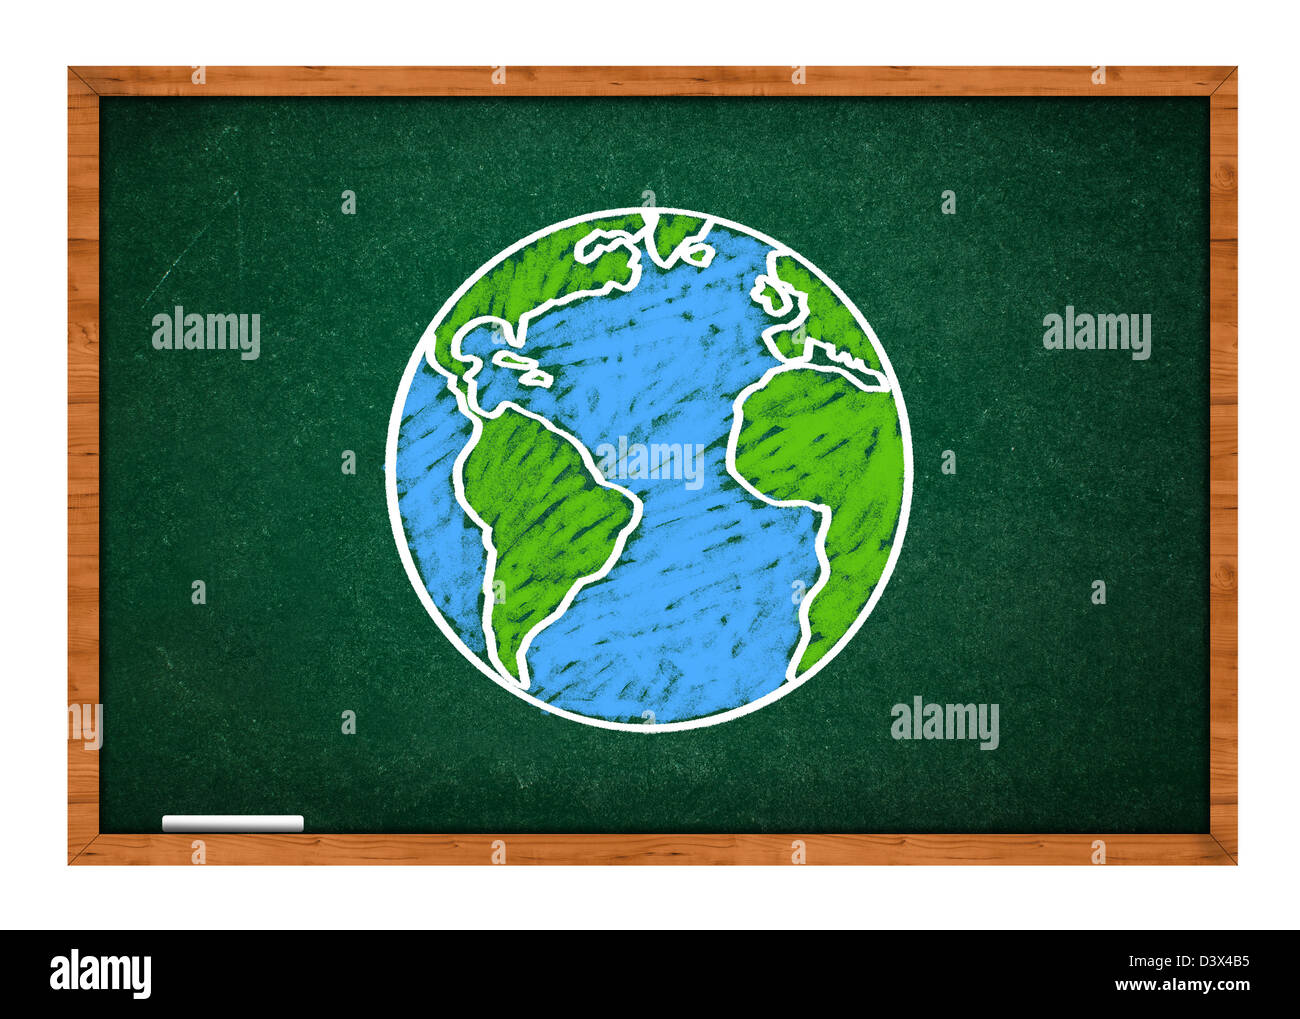 Dibujo del planeta Tierra en una escuela verde pizarra, clase de geografía concepto. Foto de stock